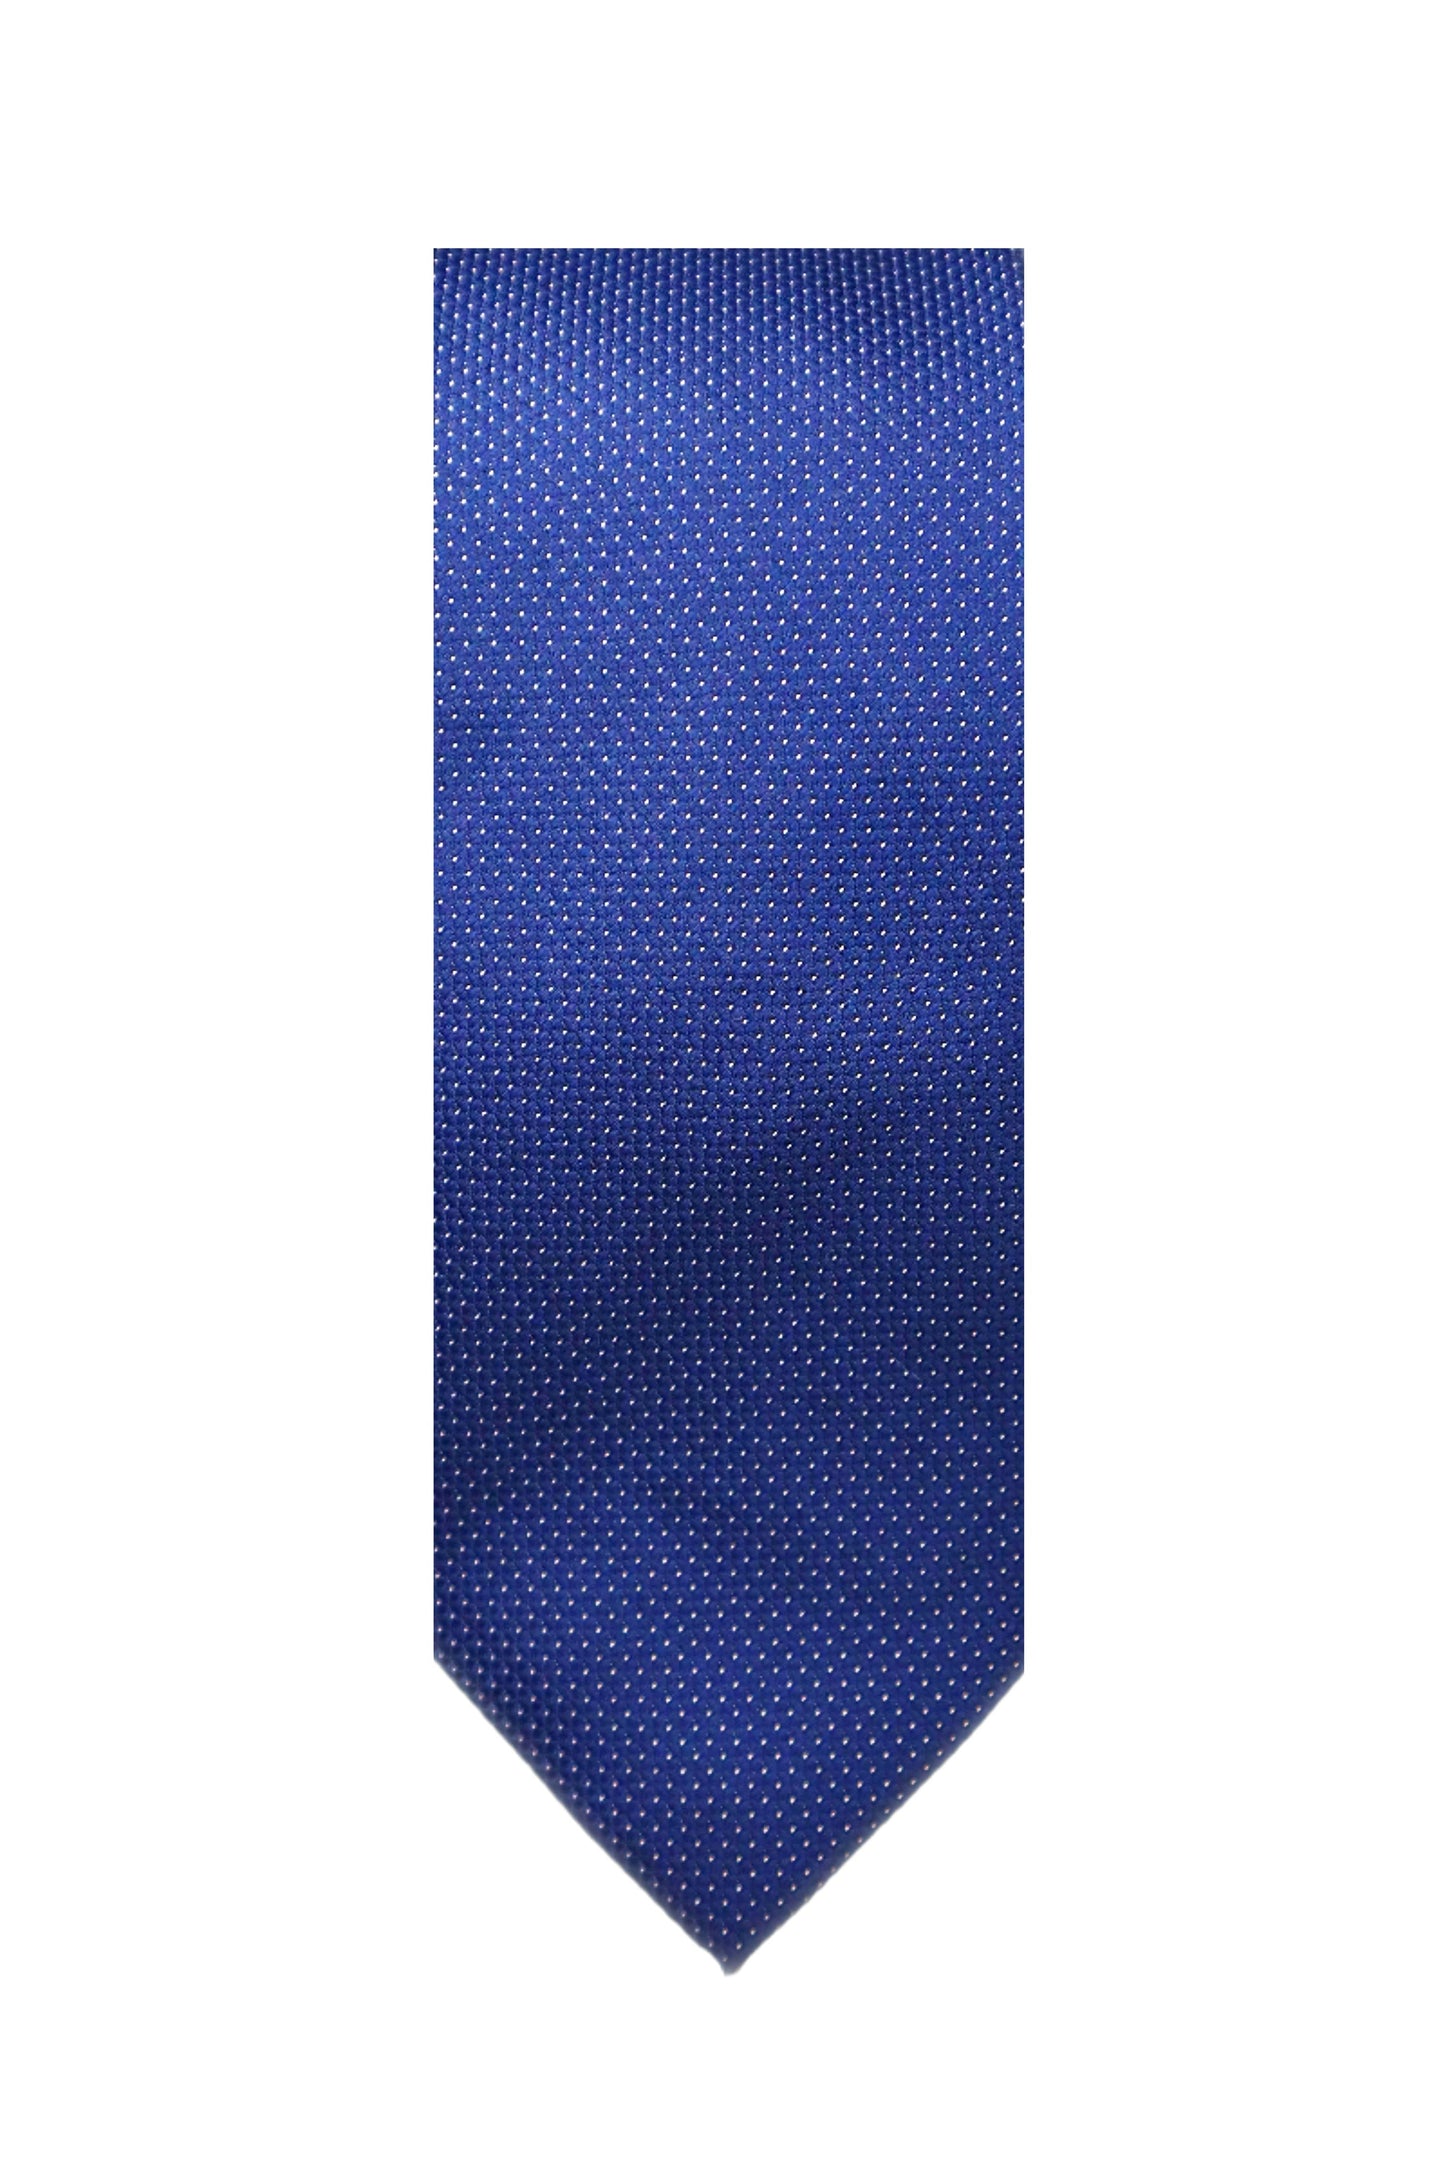 Blue Geometric Patterned Necktie